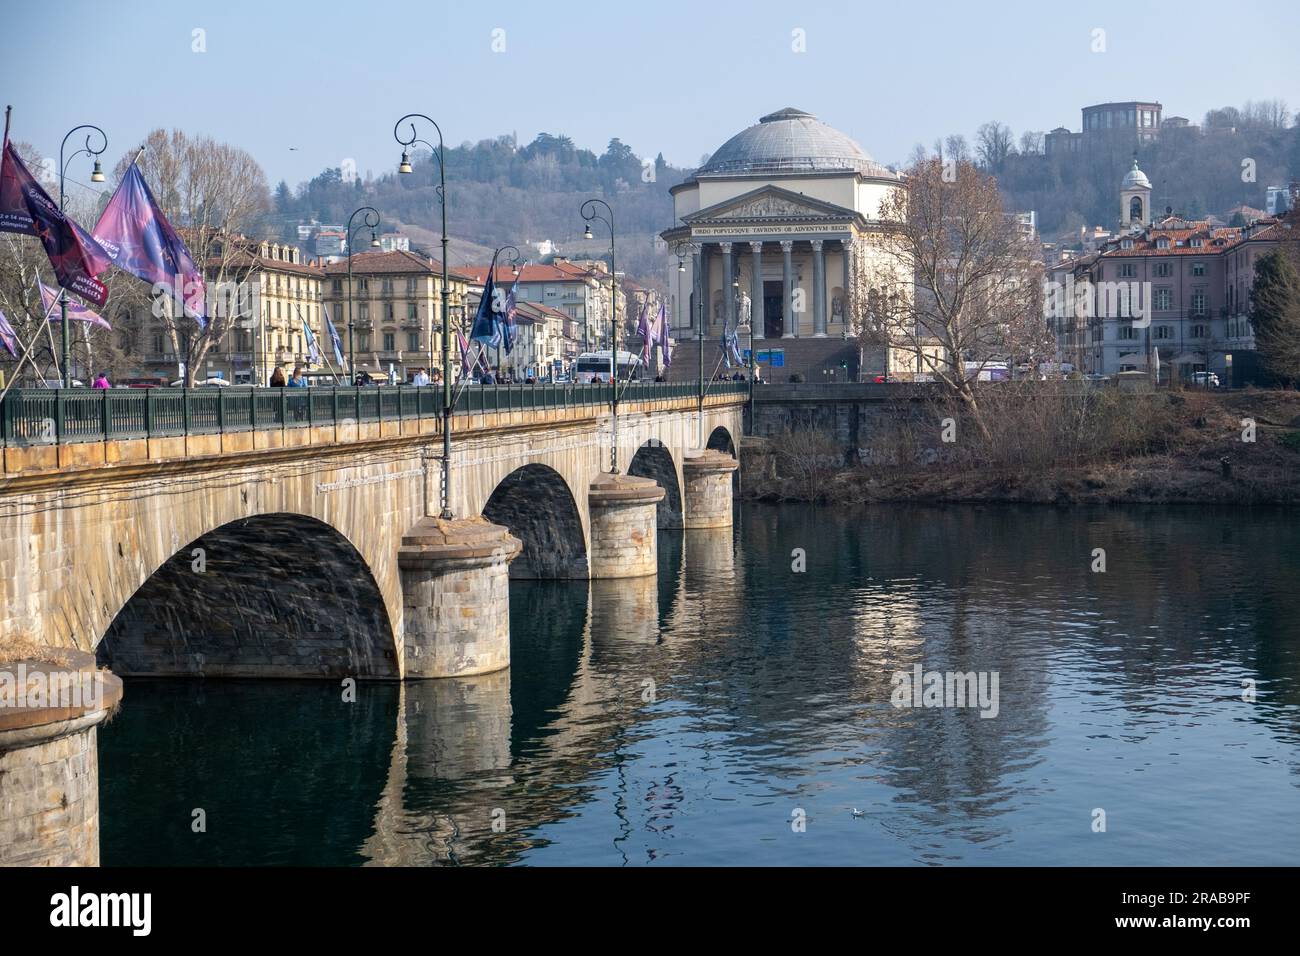 Brücke Vittorio Emanuele I über den Fluss Po, die zur Kirche Gran Madre di Dio führt, die in dem Film The Italian Job with Mic gezeigt wurde Stockfoto